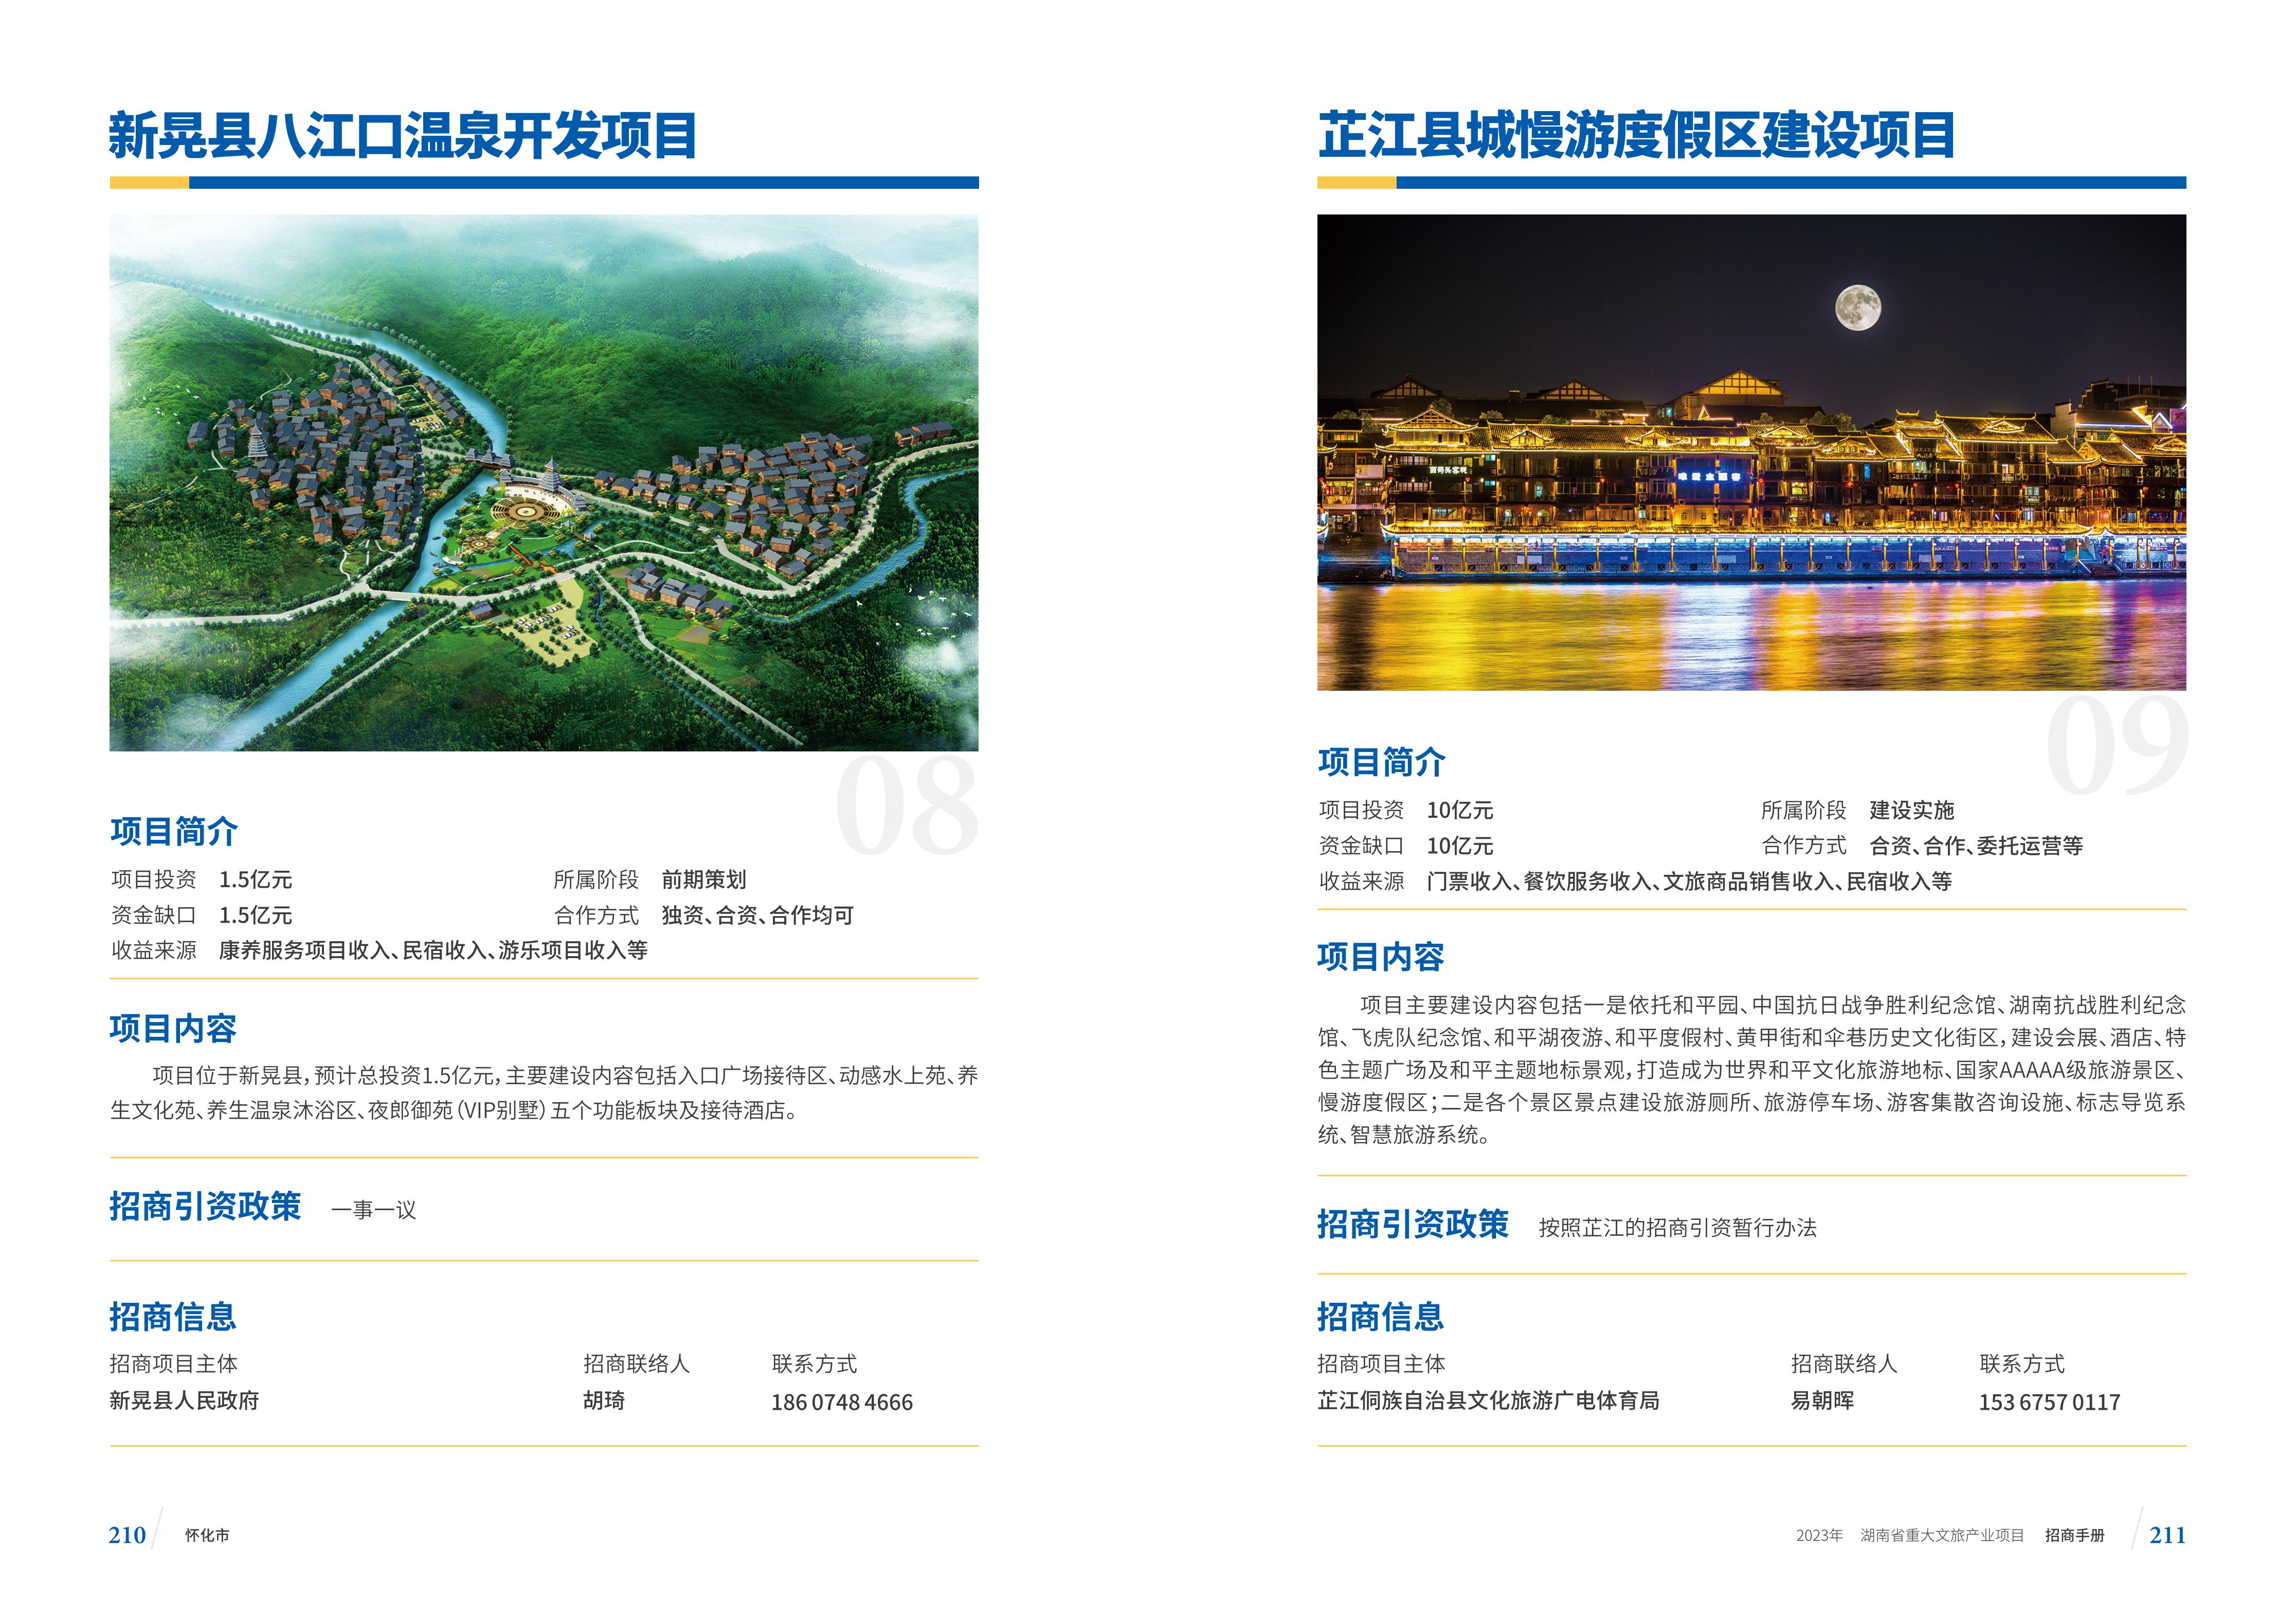 湖南省重大文旅产业项目招手册线上链接版_113.jpg